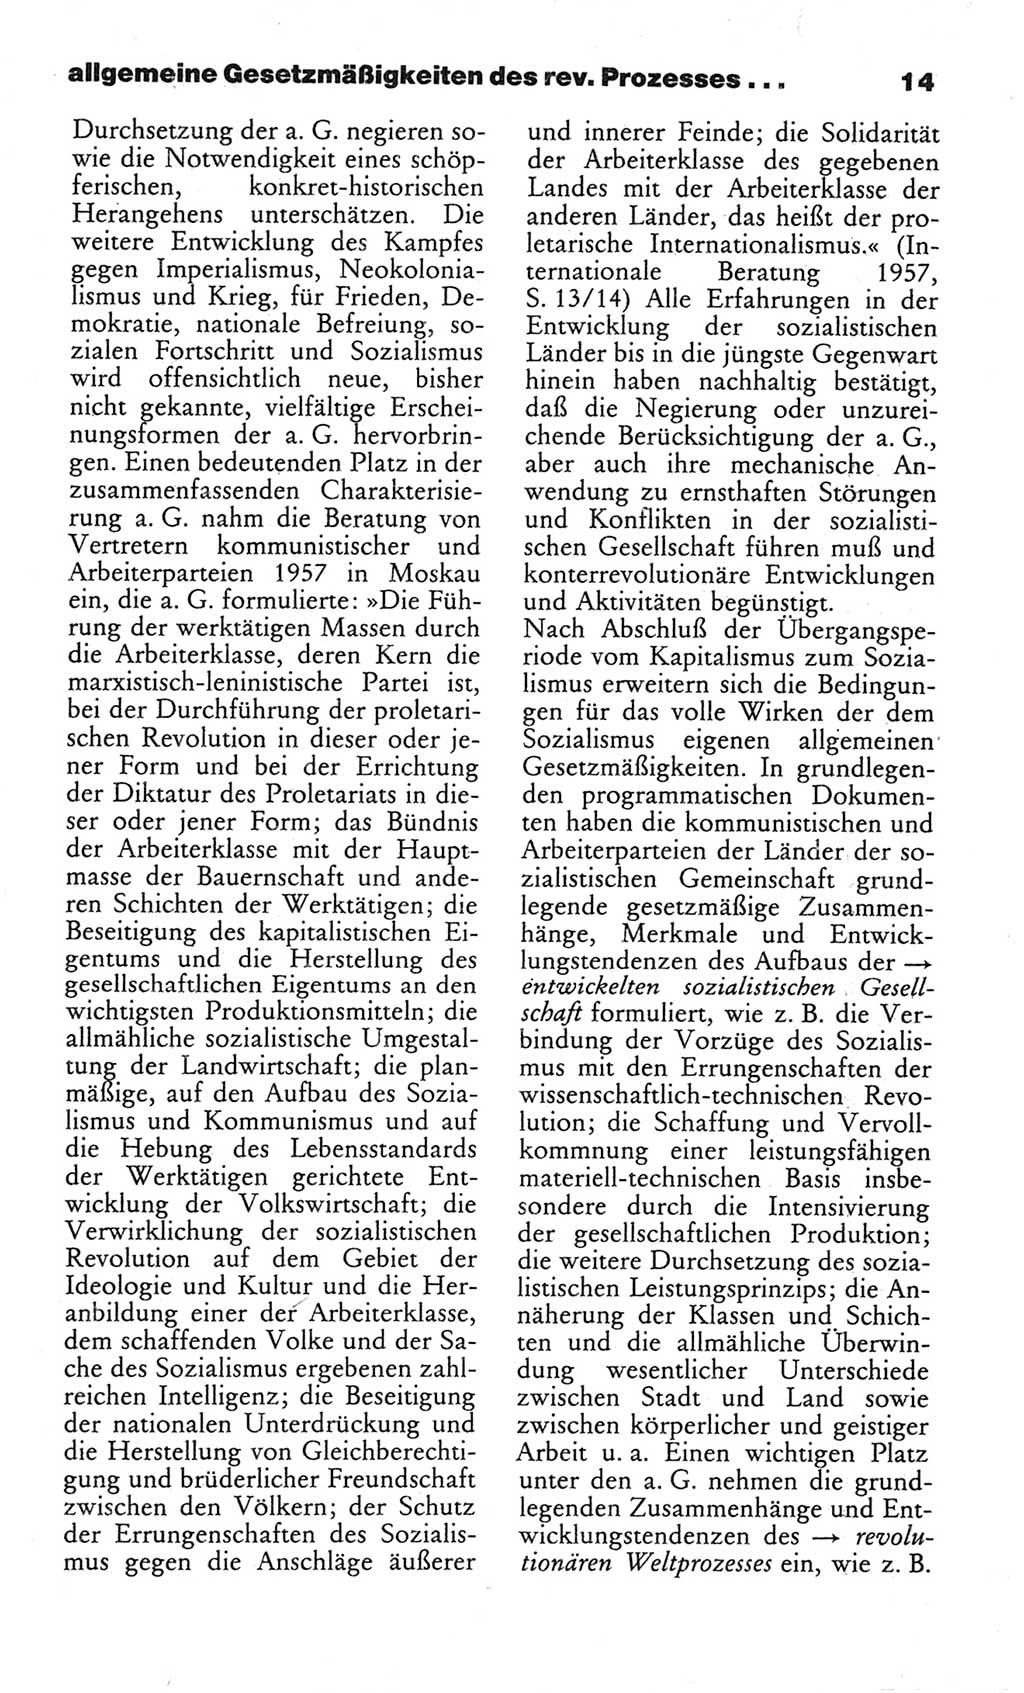 Wörterbuch des wissenschaftlichen Kommunismus [Deutsche Demokratische Republik (DDR)] 1982, Seite 14 (Wb. wiss. Komm. DDR 1982, S. 14)